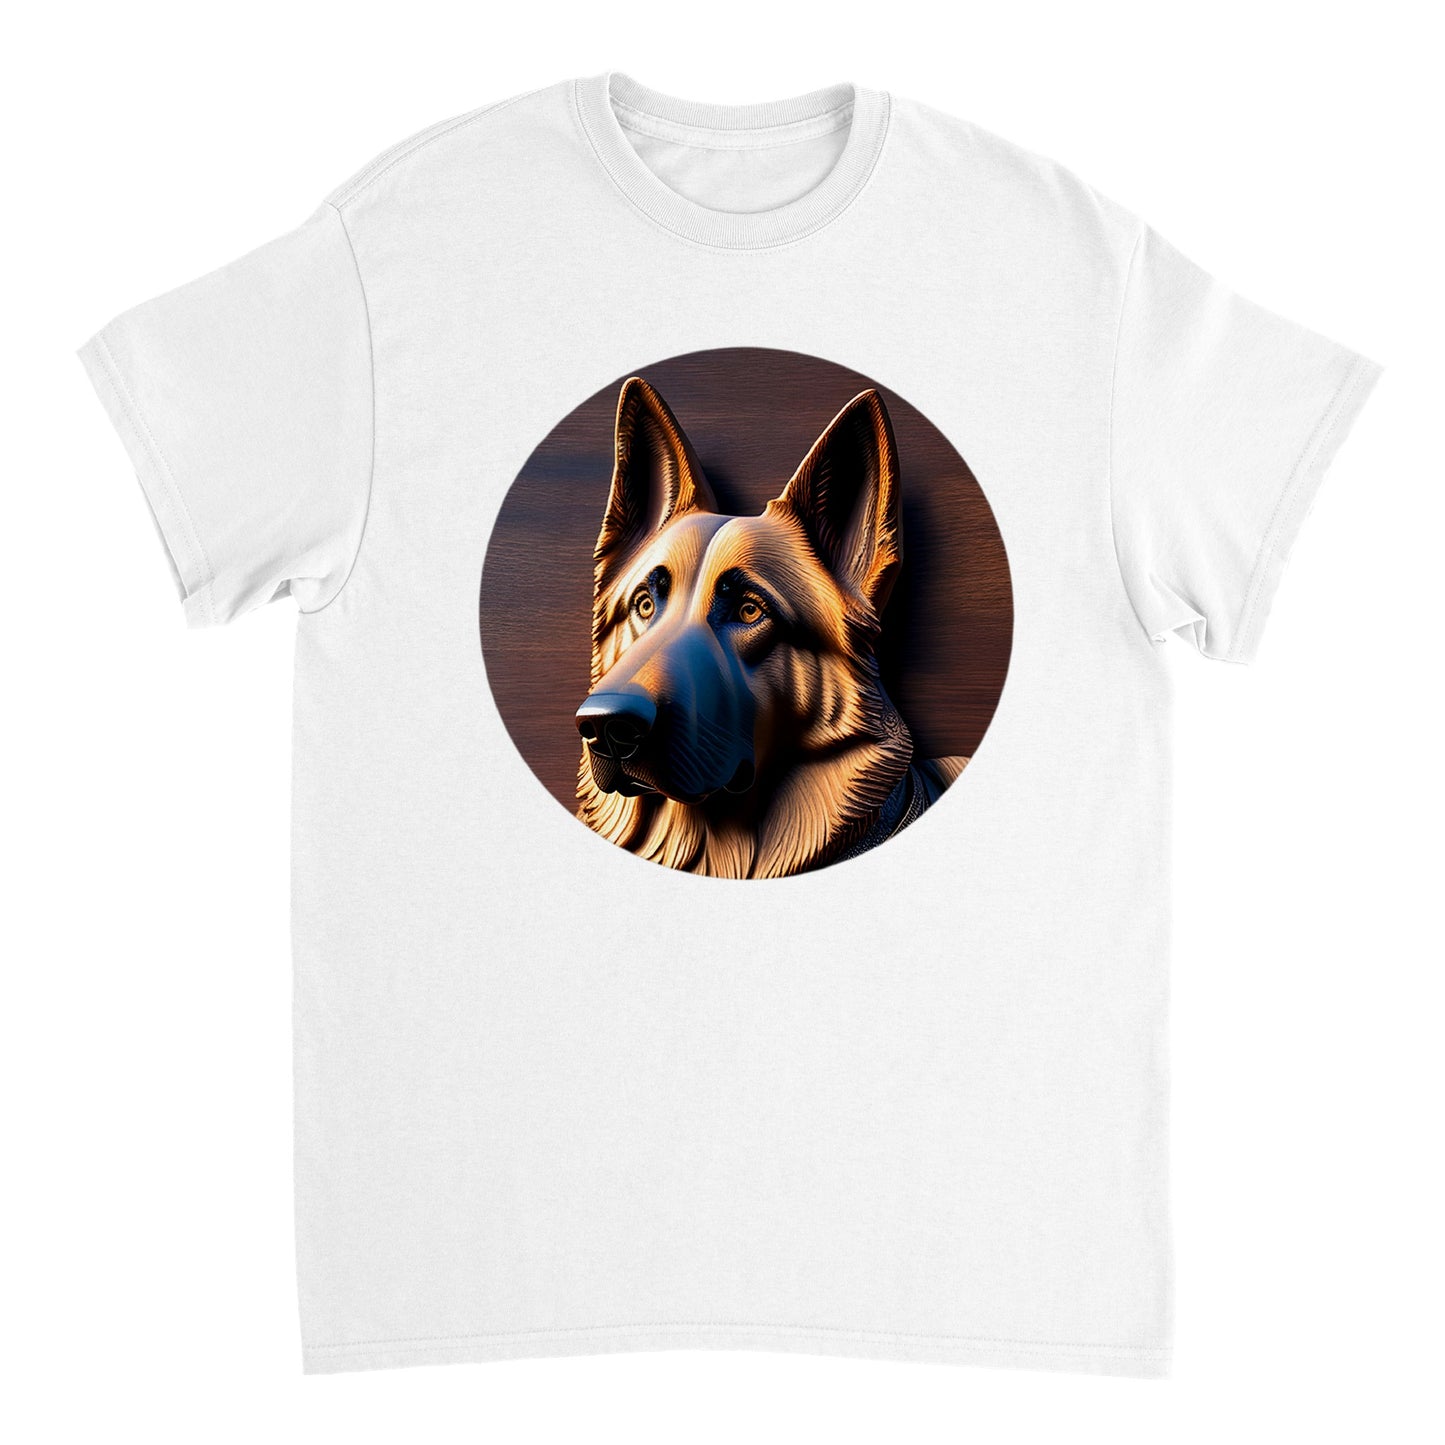 3D Wooden Animal Art - Heavyweight Unisex Crewneck T-shirt 21